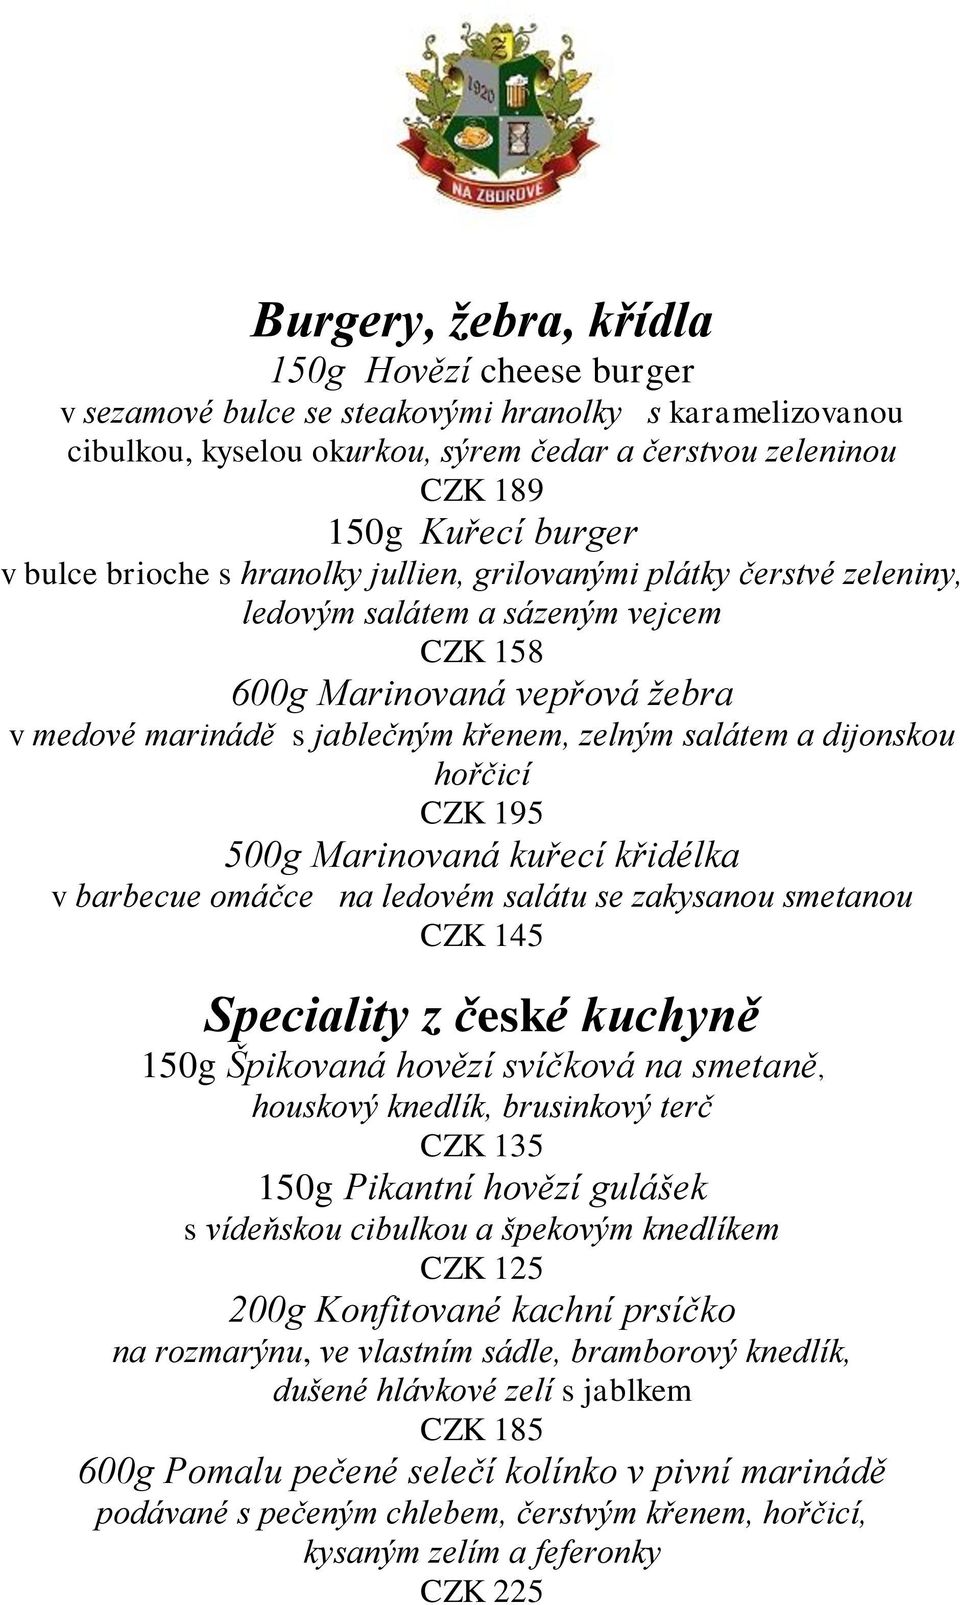 dijonskou hořčicí CZK 195 500g Marinovaná kuřecí křidélka v barbecue omáčce na ledovém salátu se zakysanou smetanou Speciality z české kuchyně 150g Špikovaná hovězí svíčková na smetaně, houskový